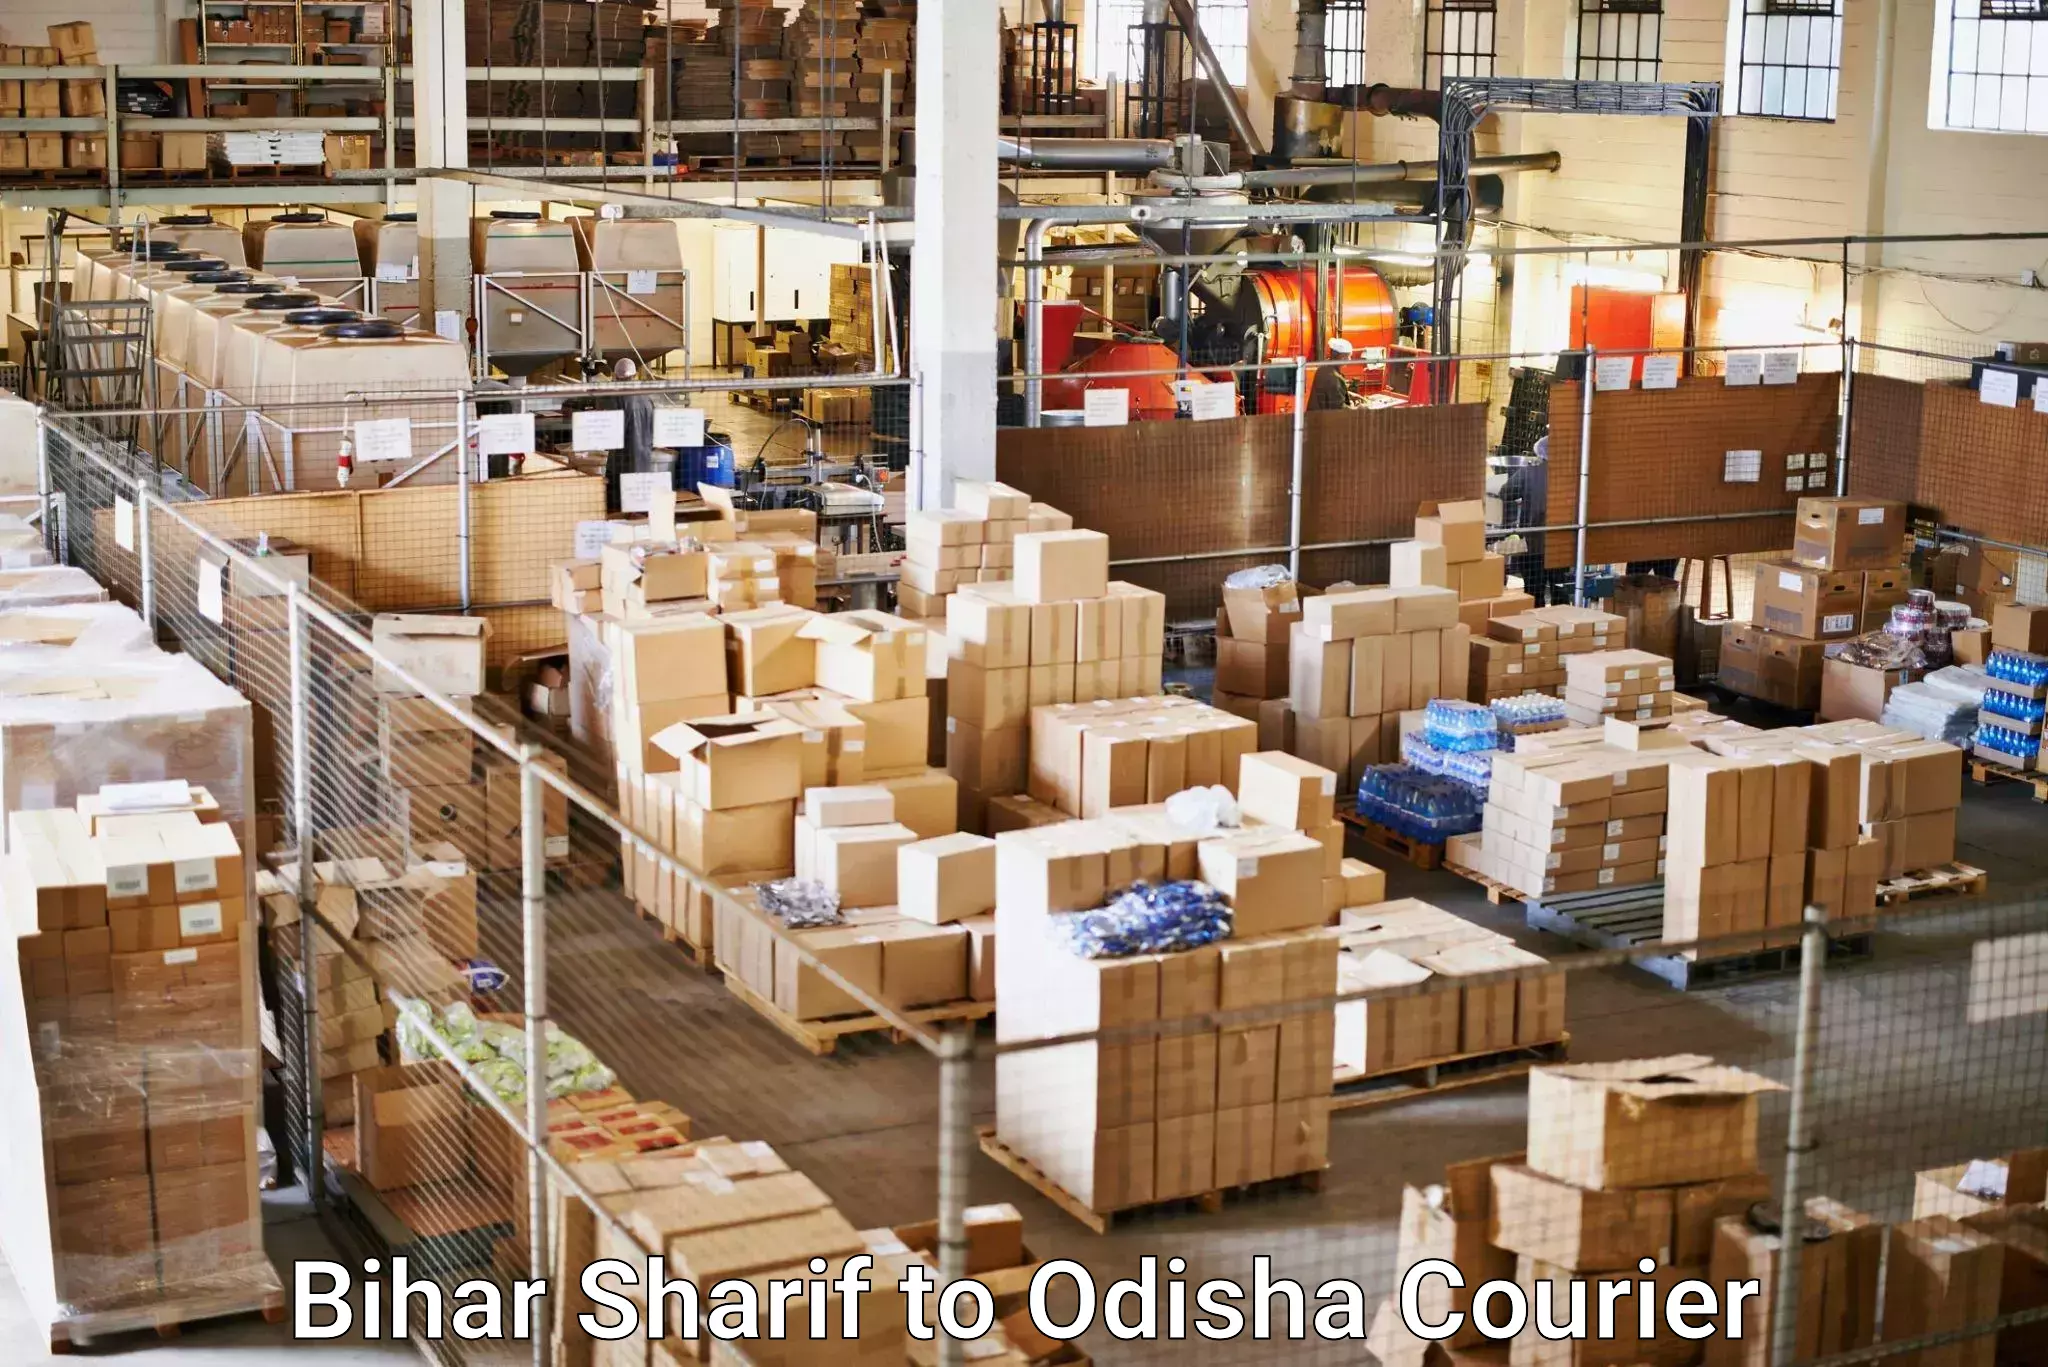 Logistics service provider Bihar Sharif to Odisha